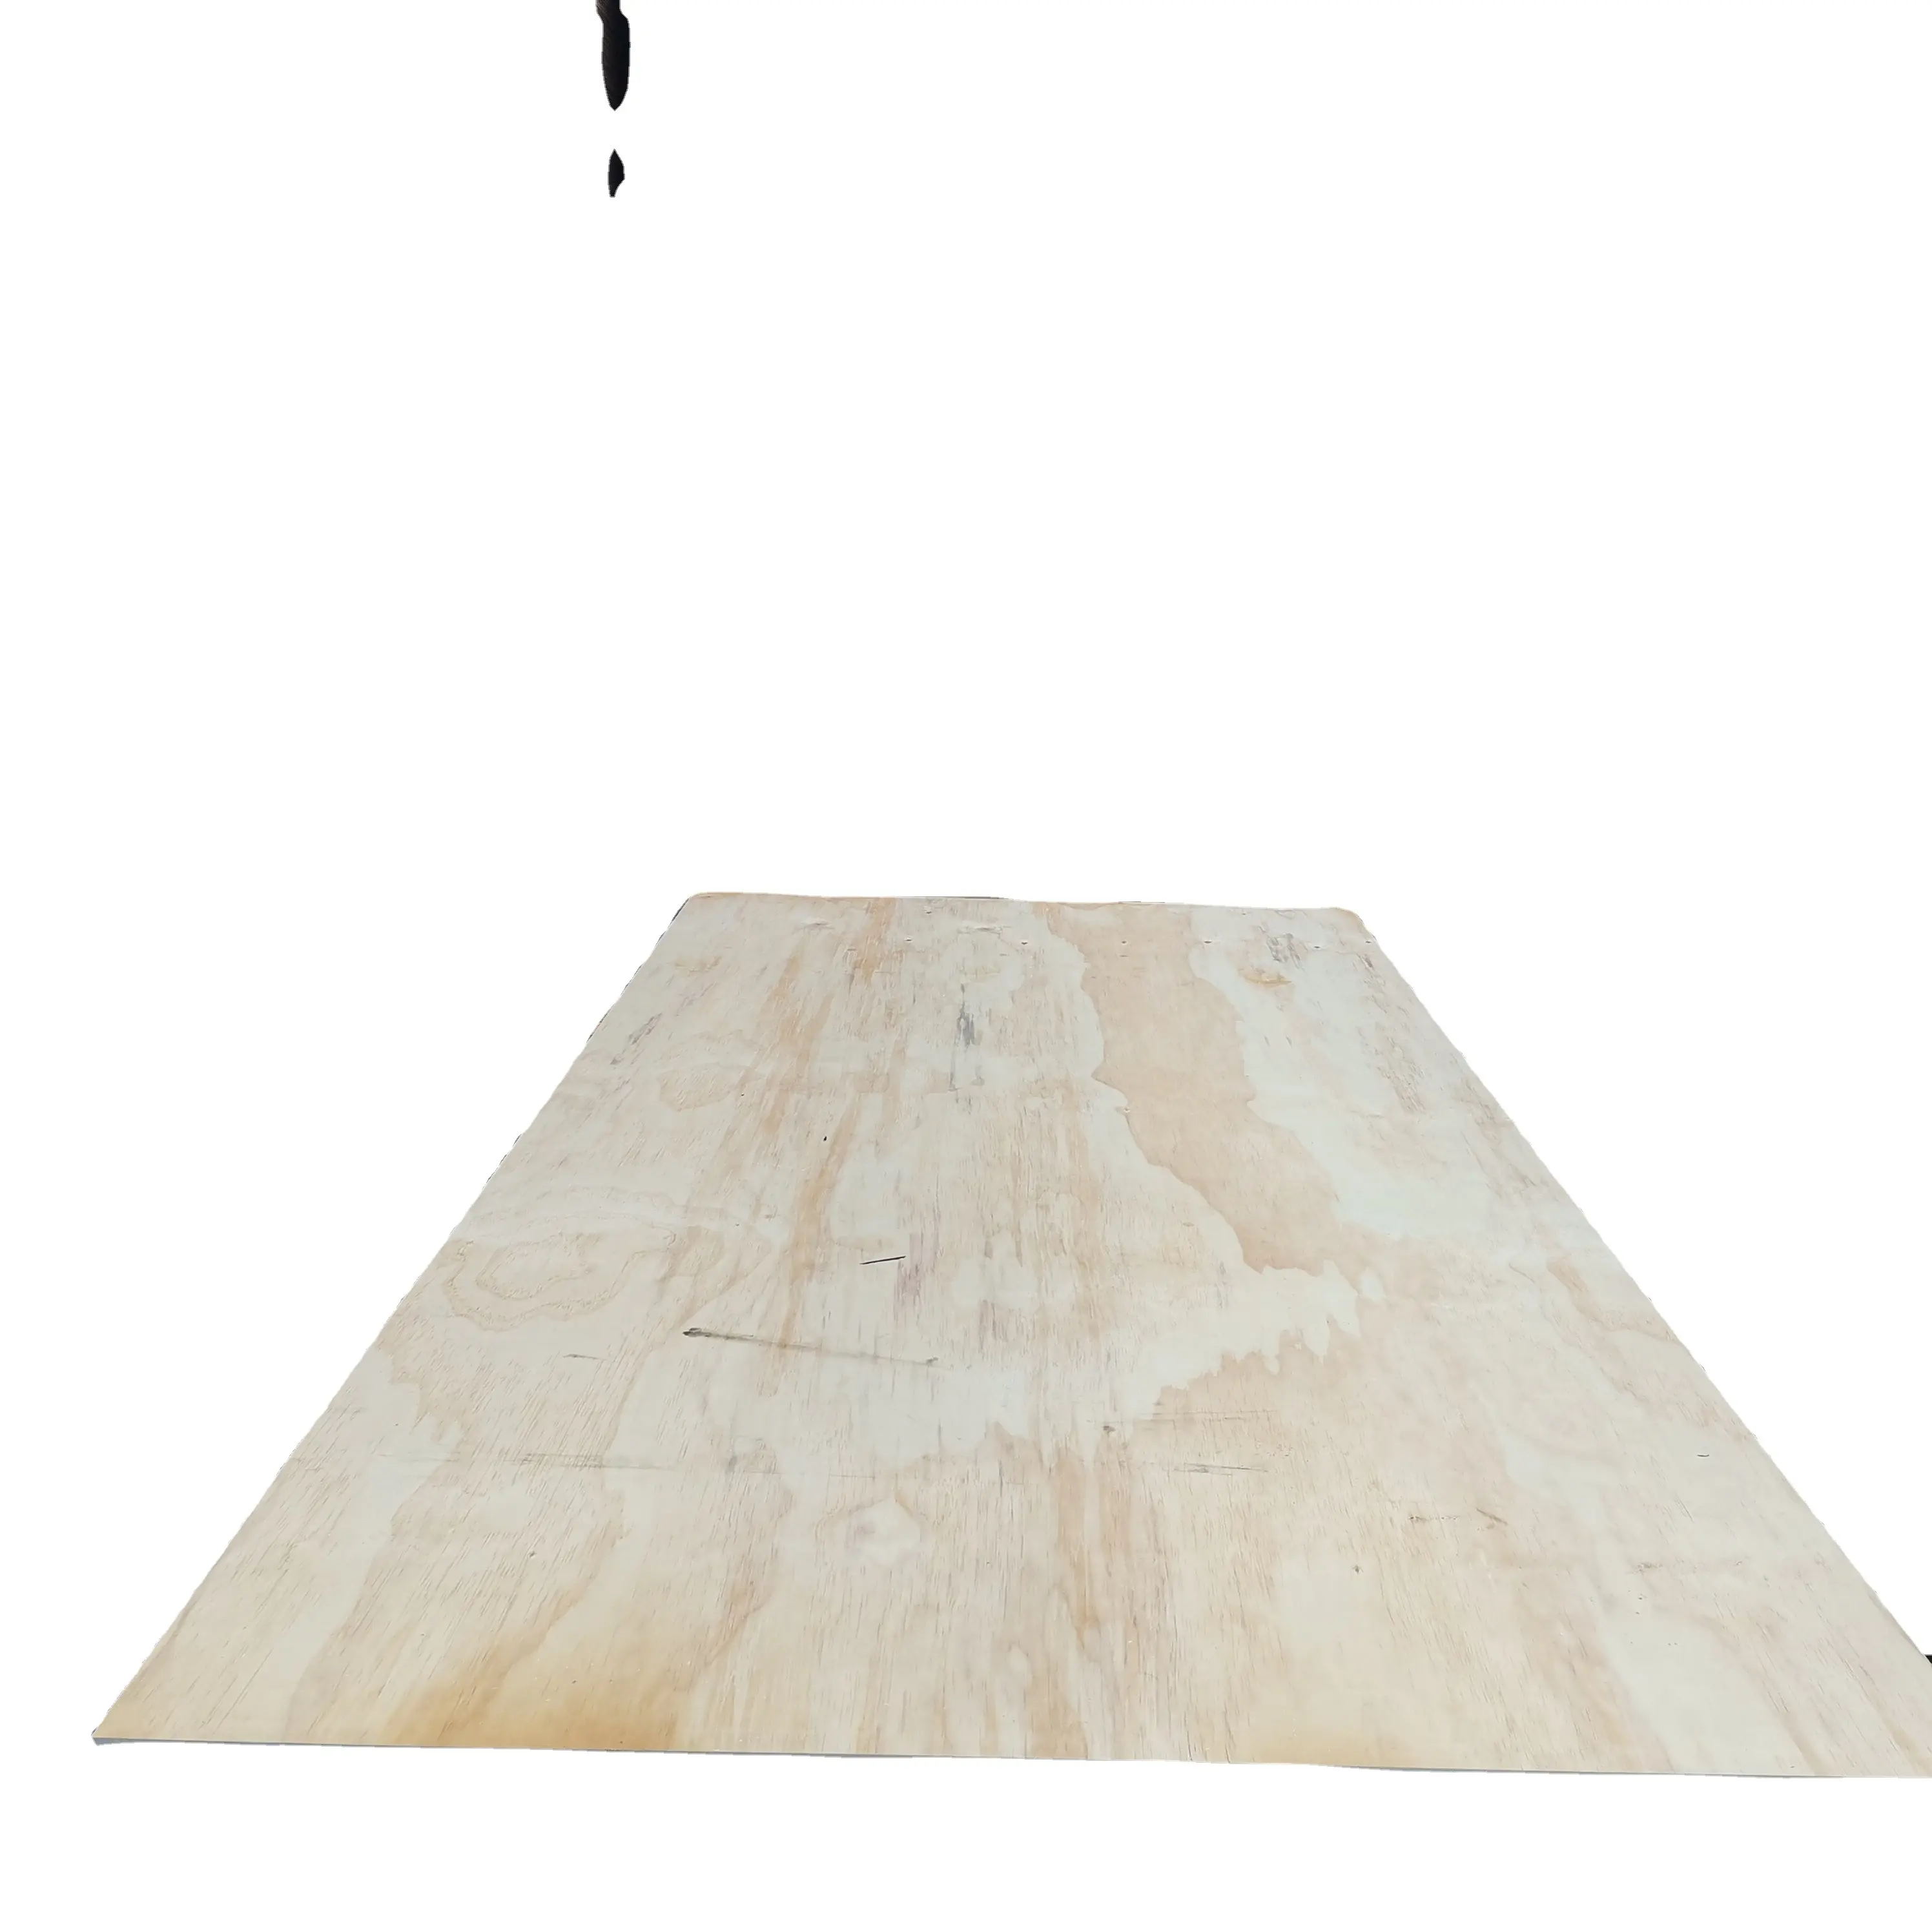 أنواع مختلفة من ألواح خشب الرقائق مصبوبة مسبقًا 18 مم من خشب الصنوبر العازل ومقوالب 8×4، ألواح خشب الرقائق للتخزين من المصنع